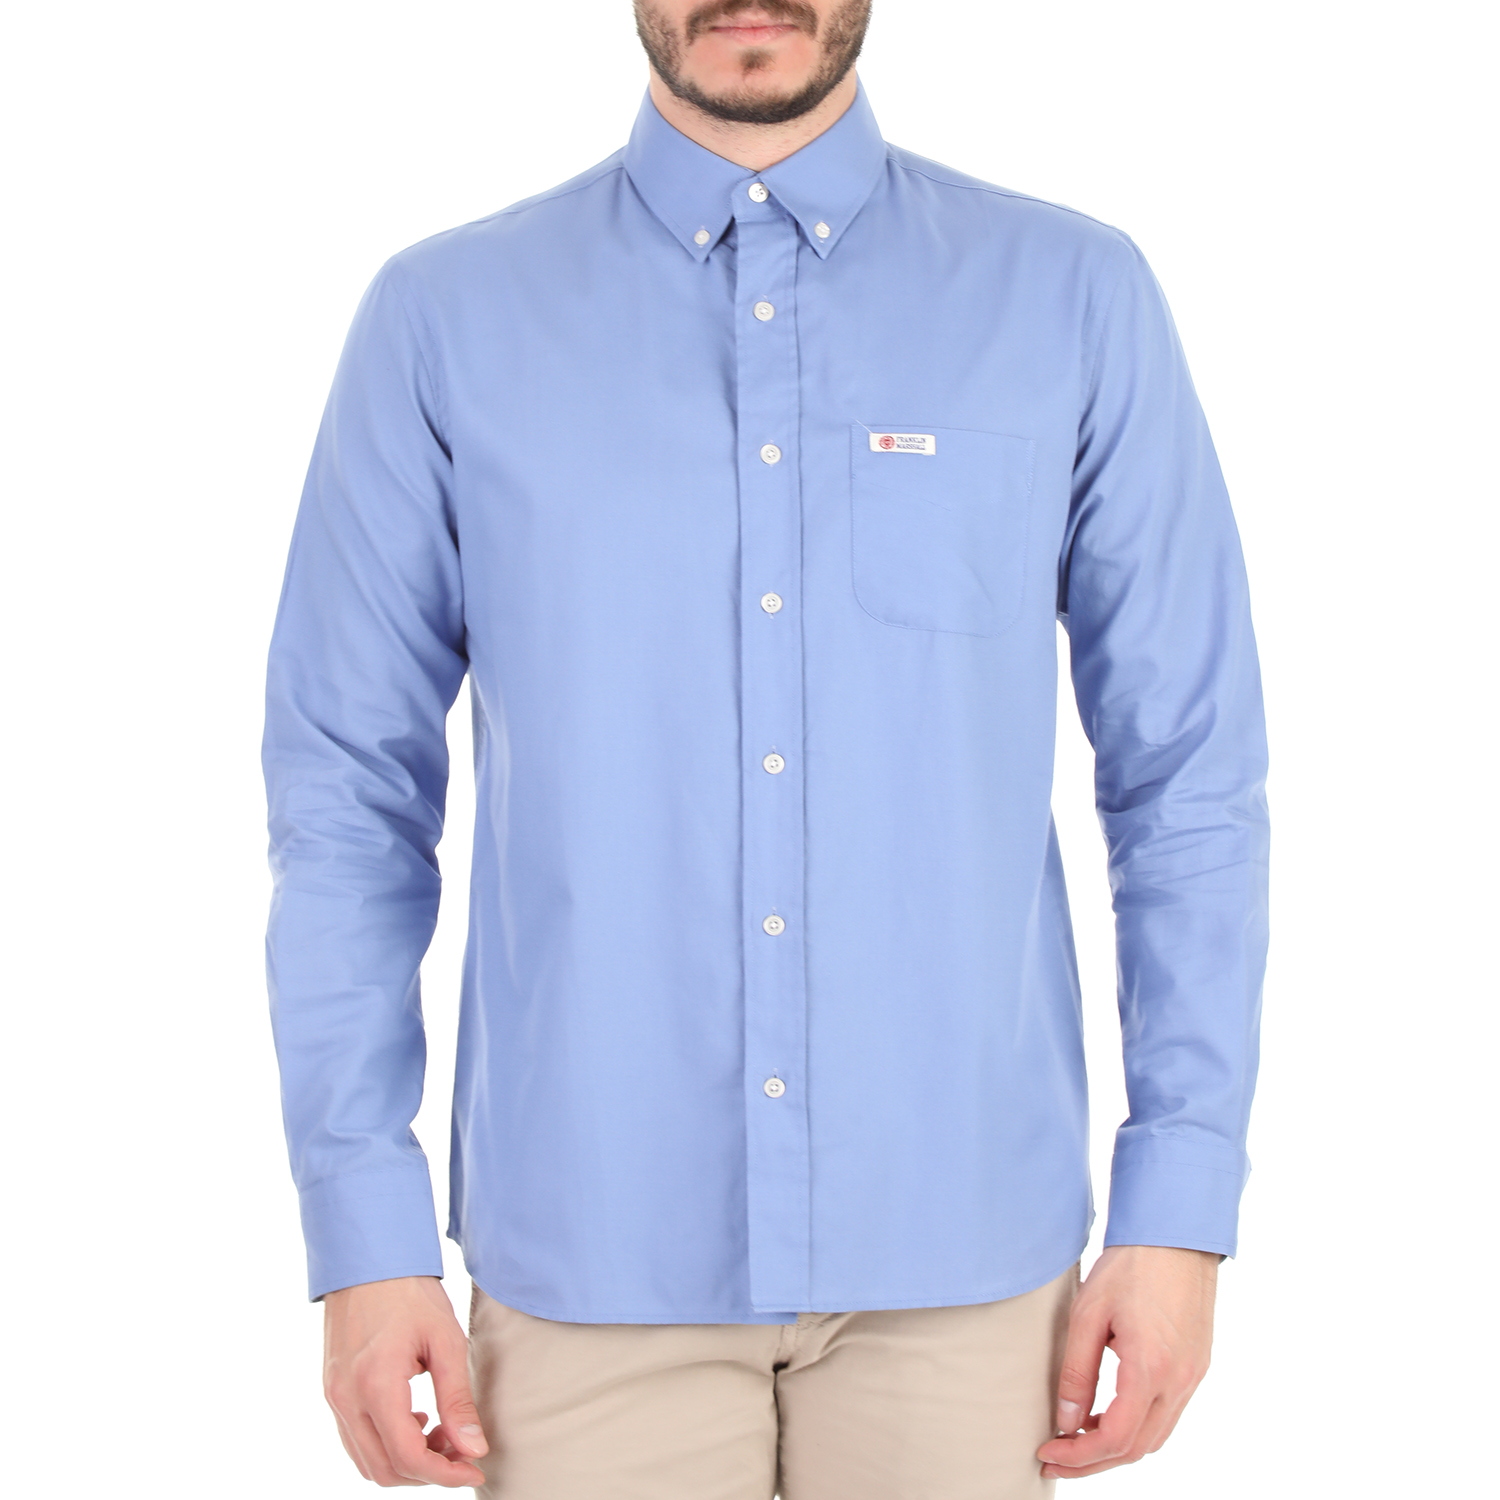 Ανδρικά/Ρούχα/Πουκάμισα/Μακρυμάνικα FRANKLIN & MARSHALL - Ανδρικό πουκάμισο FRANKLIN & MARSHALL γαλάζιο